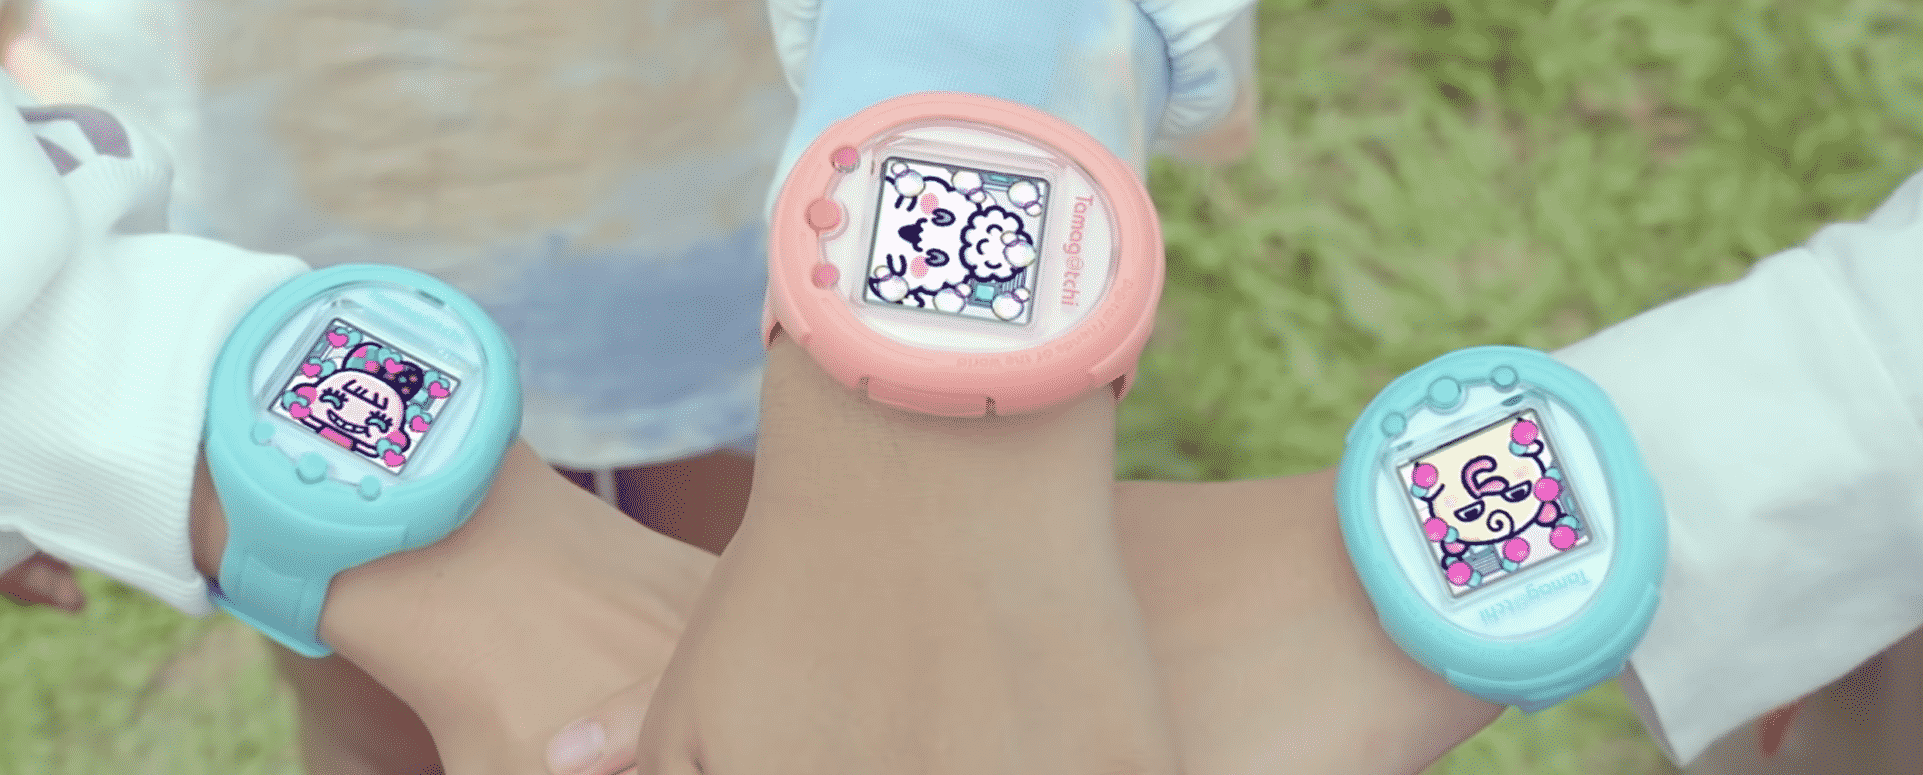 Tamagotchi retorna como smartwatch, confira!